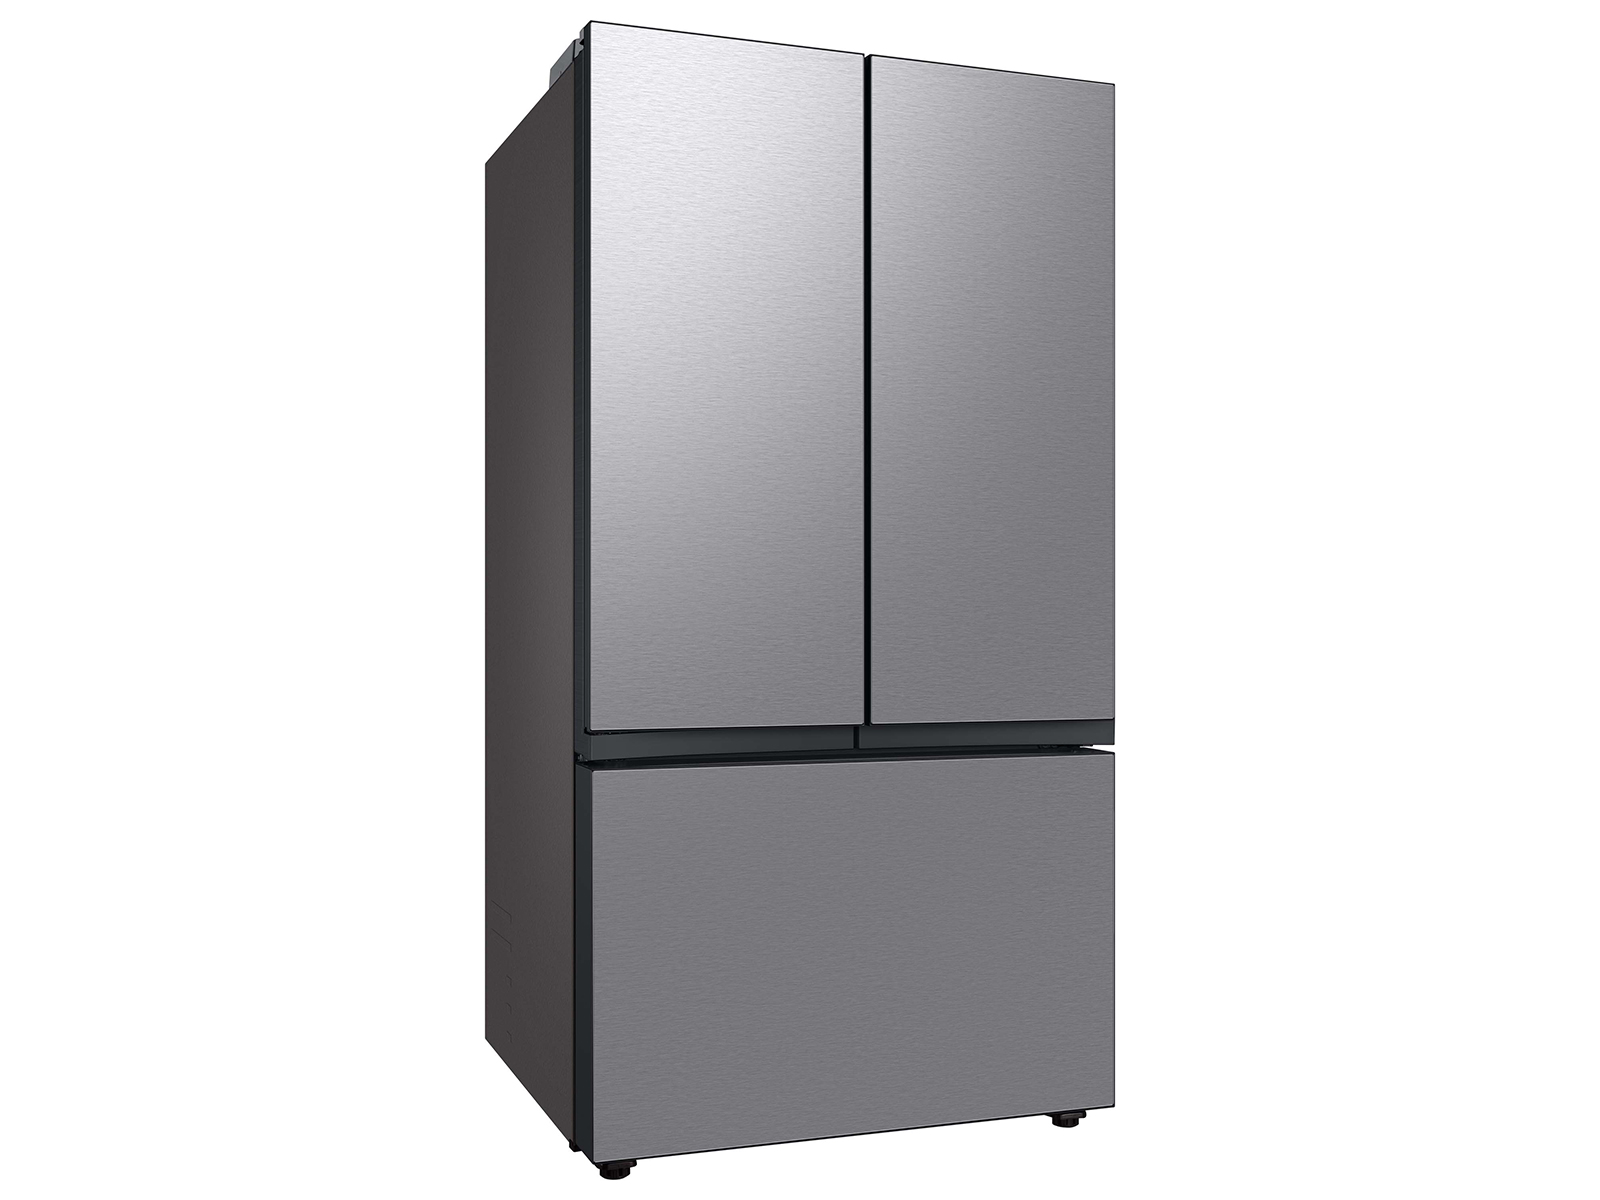 Bespoke Energy Efficient 3-Door French Door Refrigerator 30 cu. ft. in ...